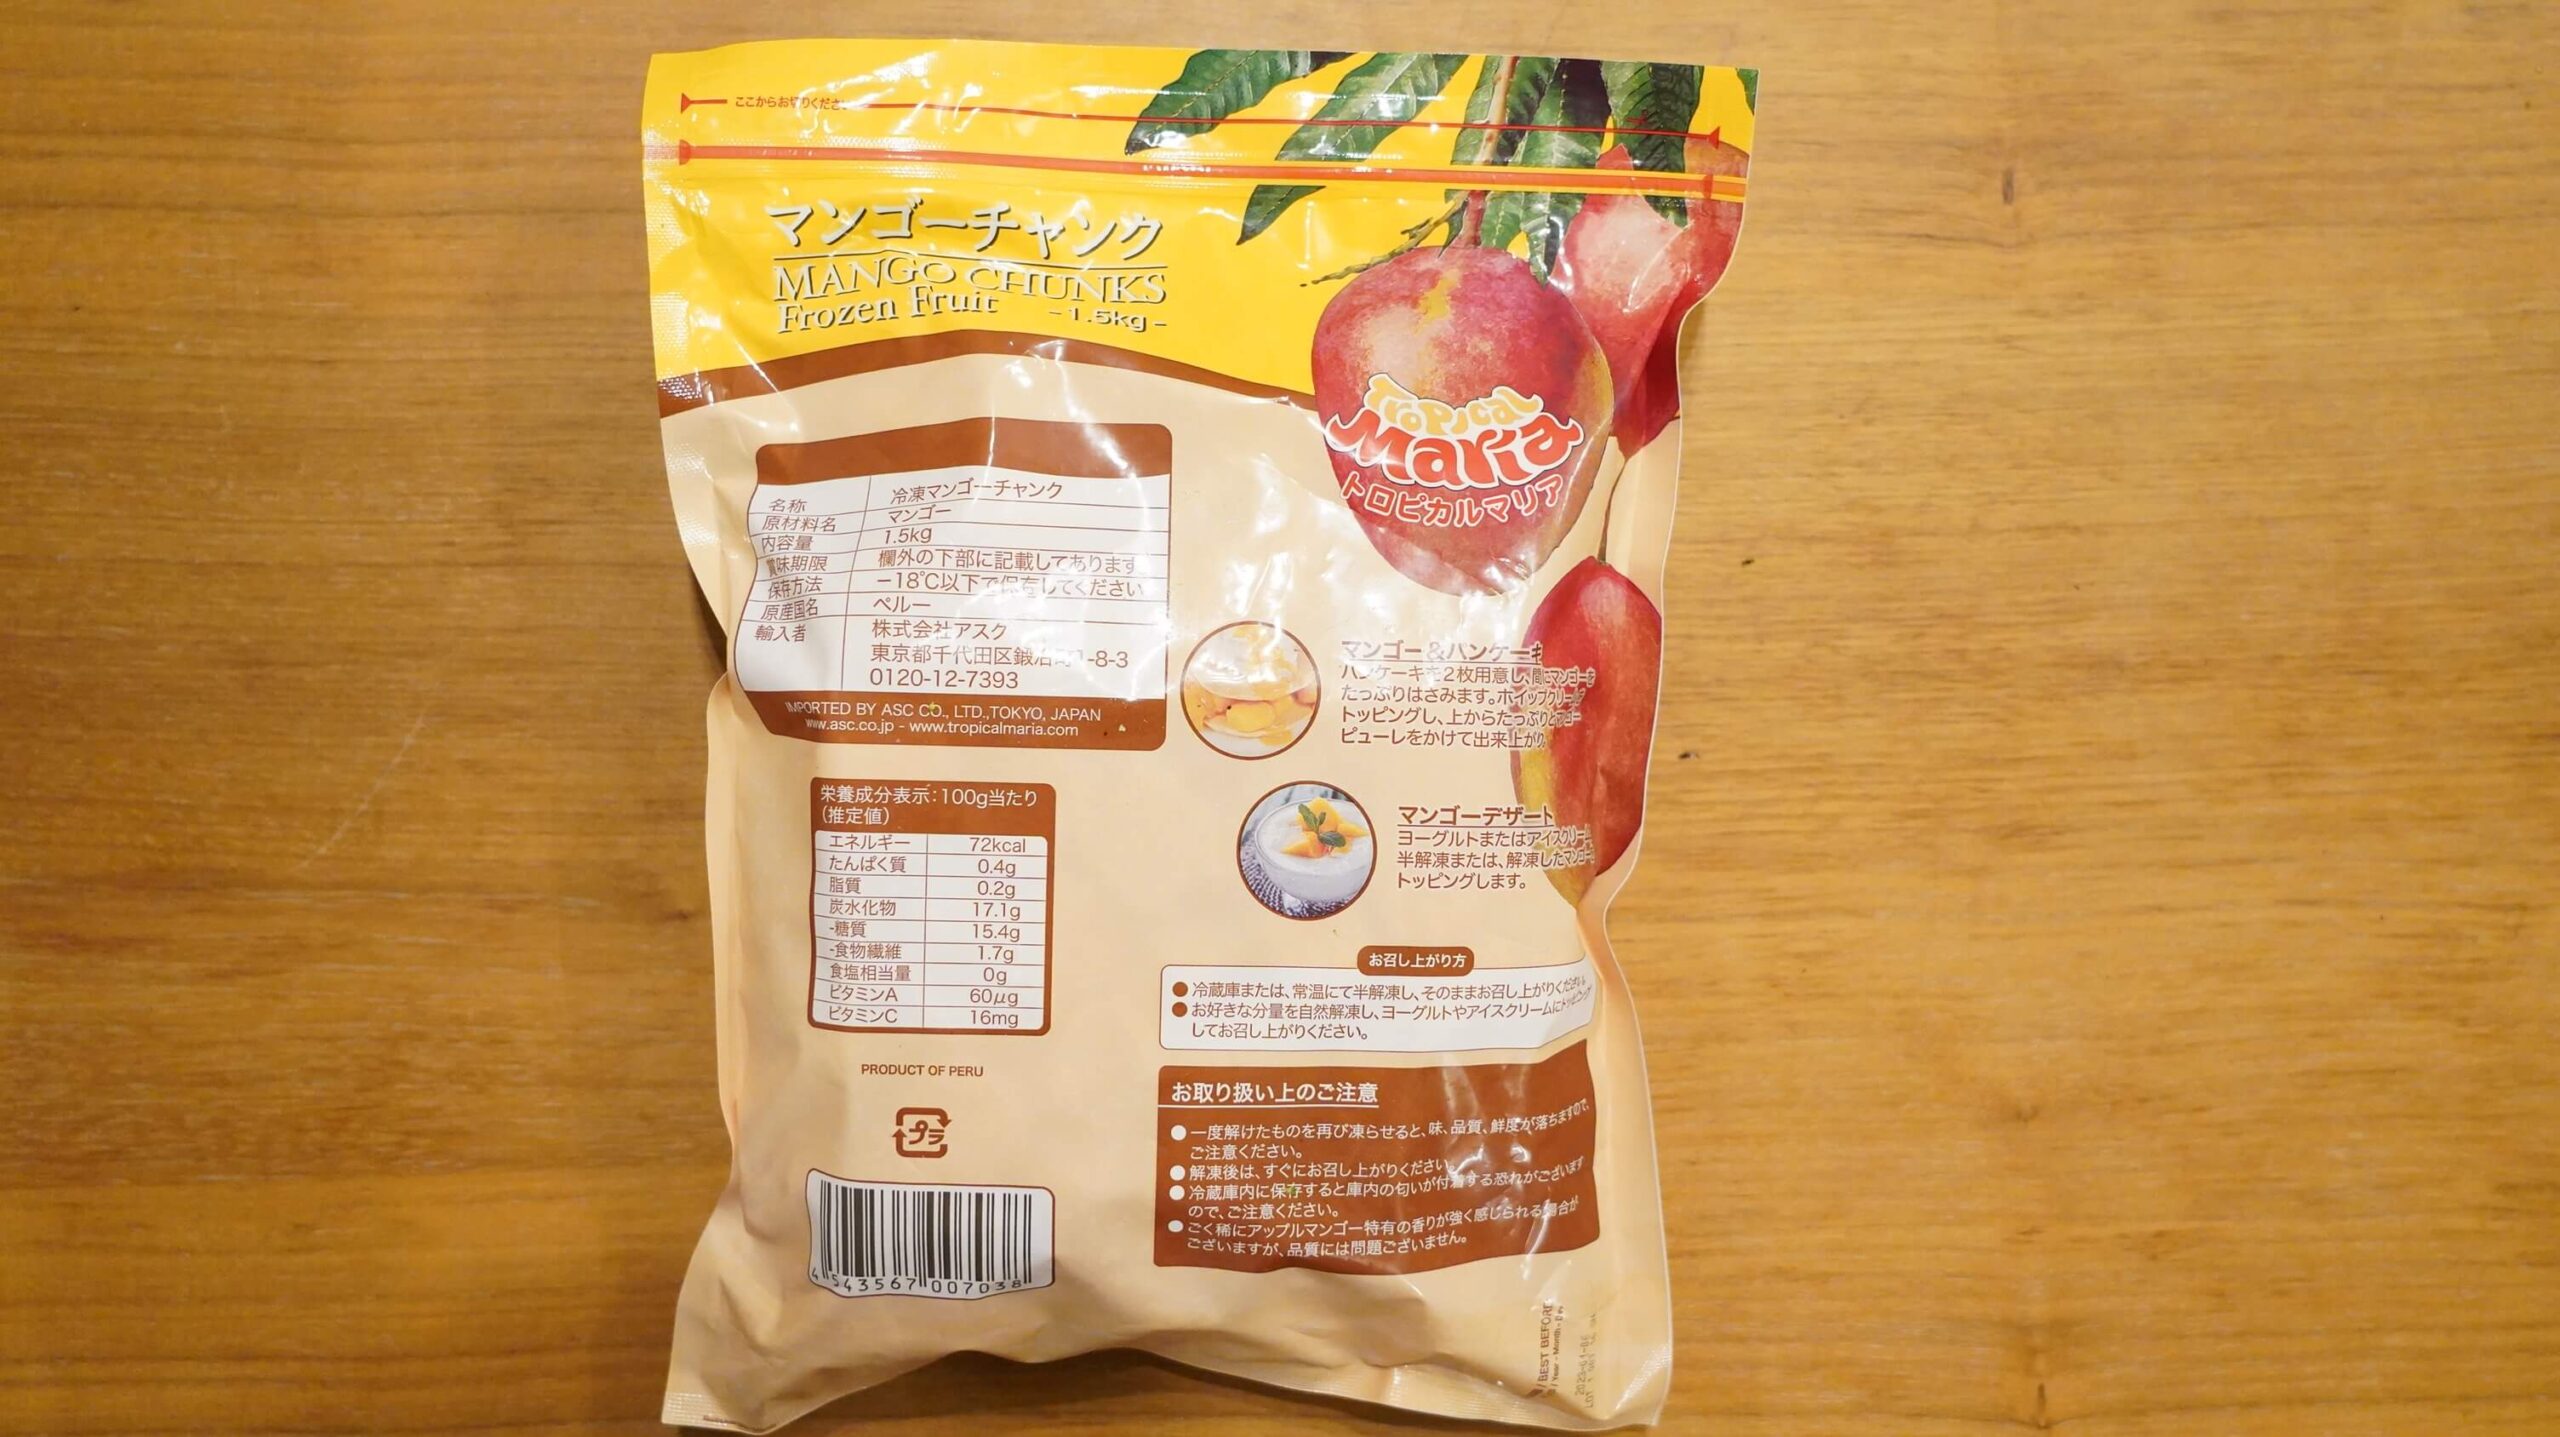 コストコの冷凍マンゴー「トロピカルマリア・マンゴーチャンク」のパッケージ裏面の写真